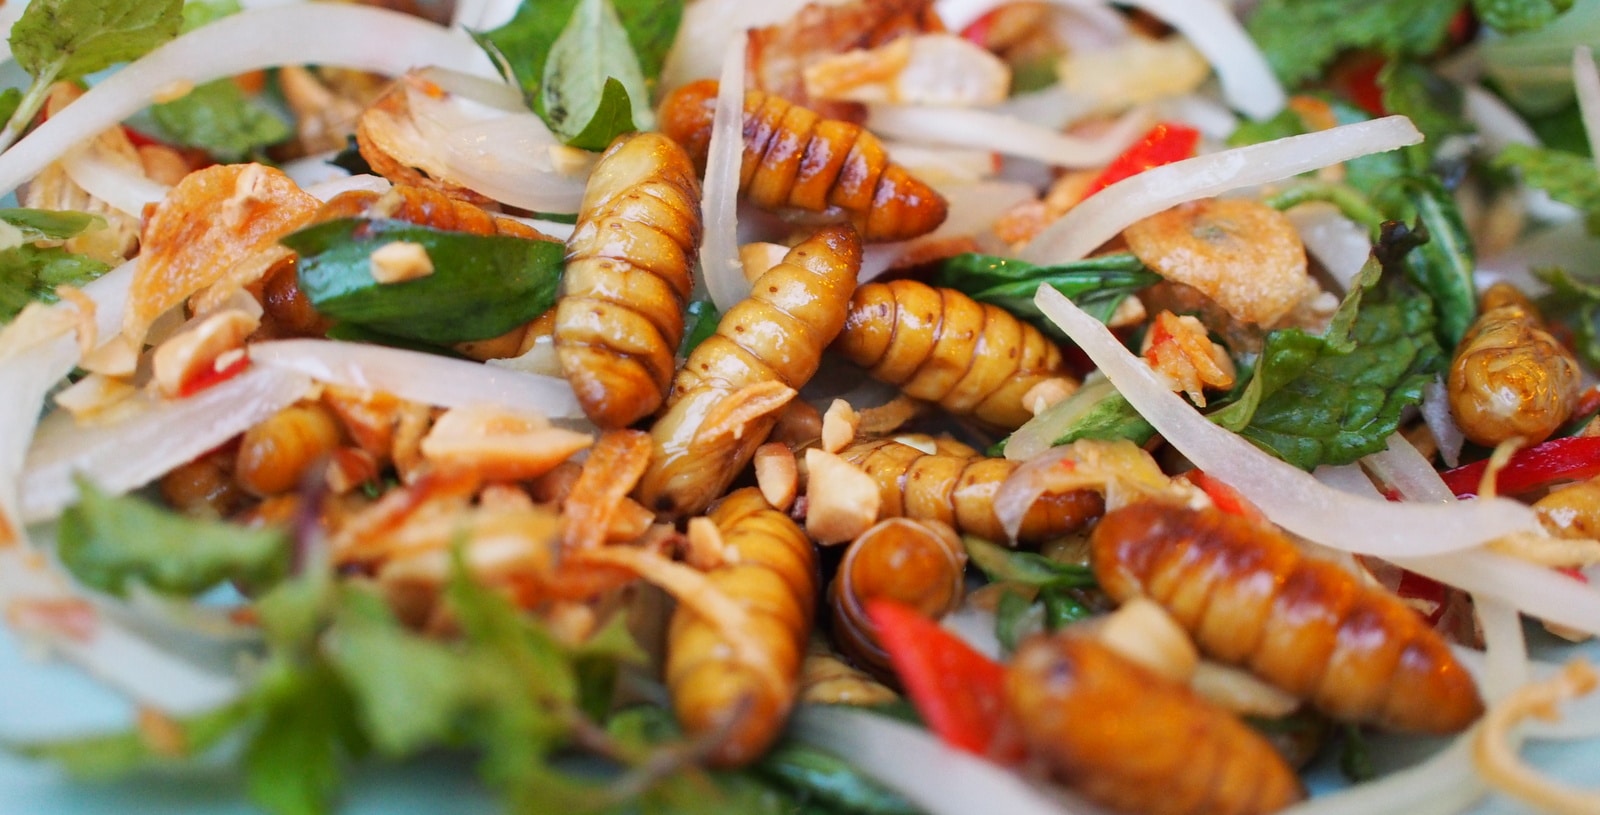 Peut-on vraiment manger des insectes ?